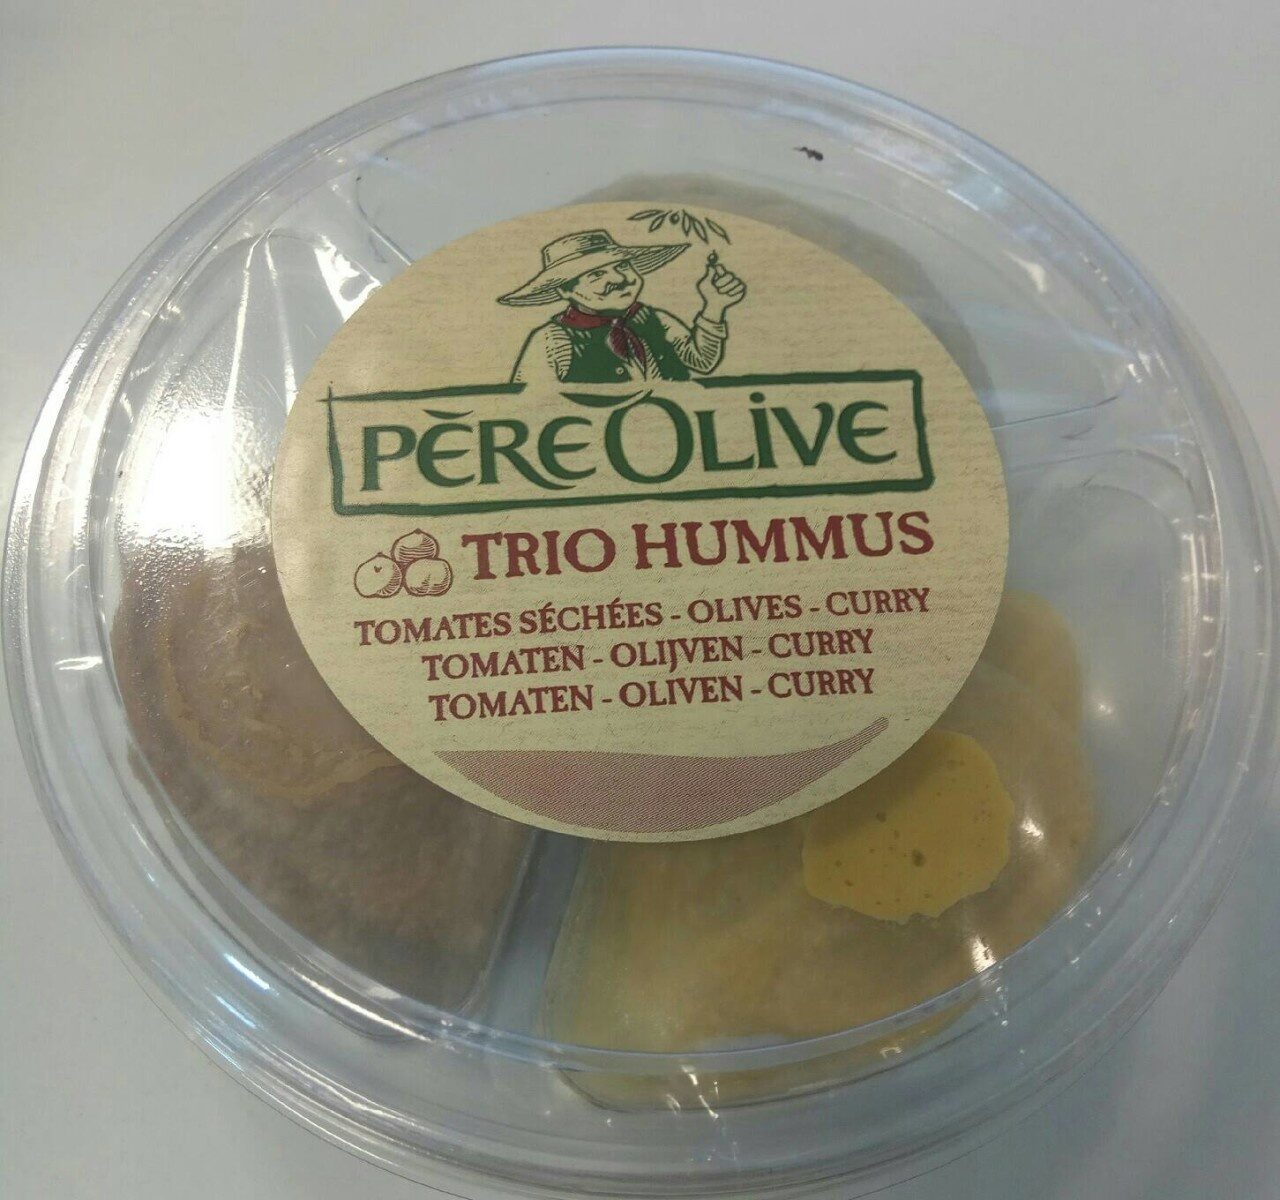 Trio hummus - Product - en